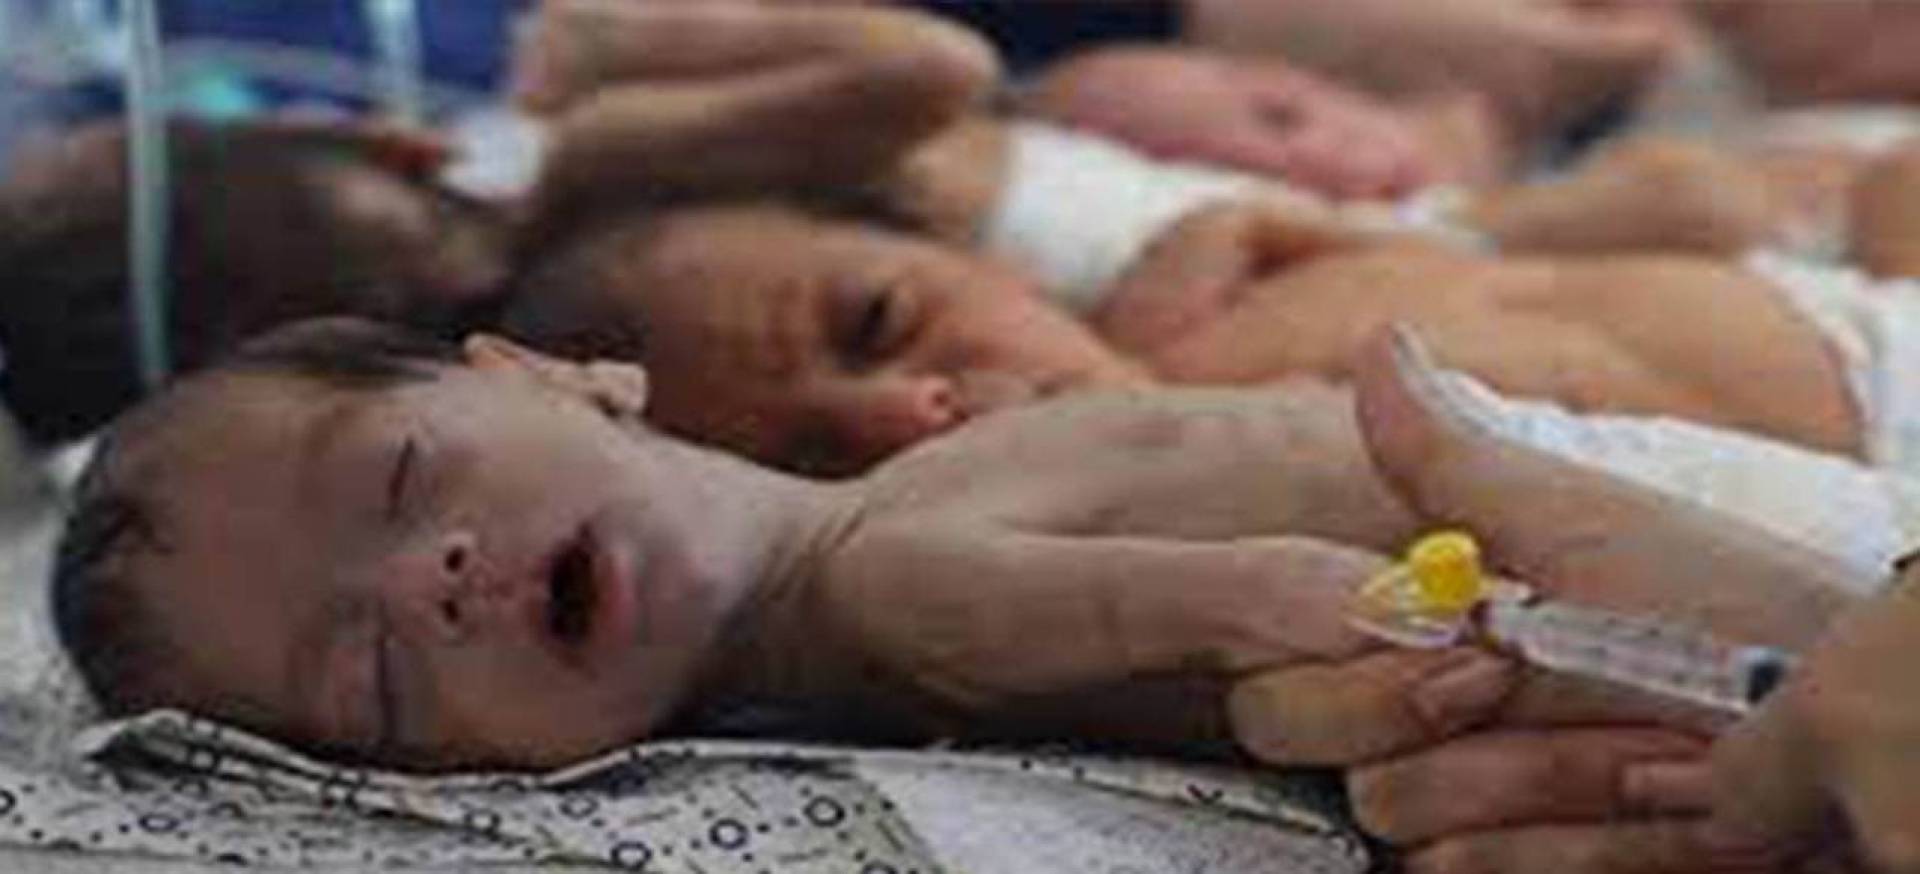 سوء التغذية والمجاعة شمال قطاع غزة تهدد حياة  50 طفلا